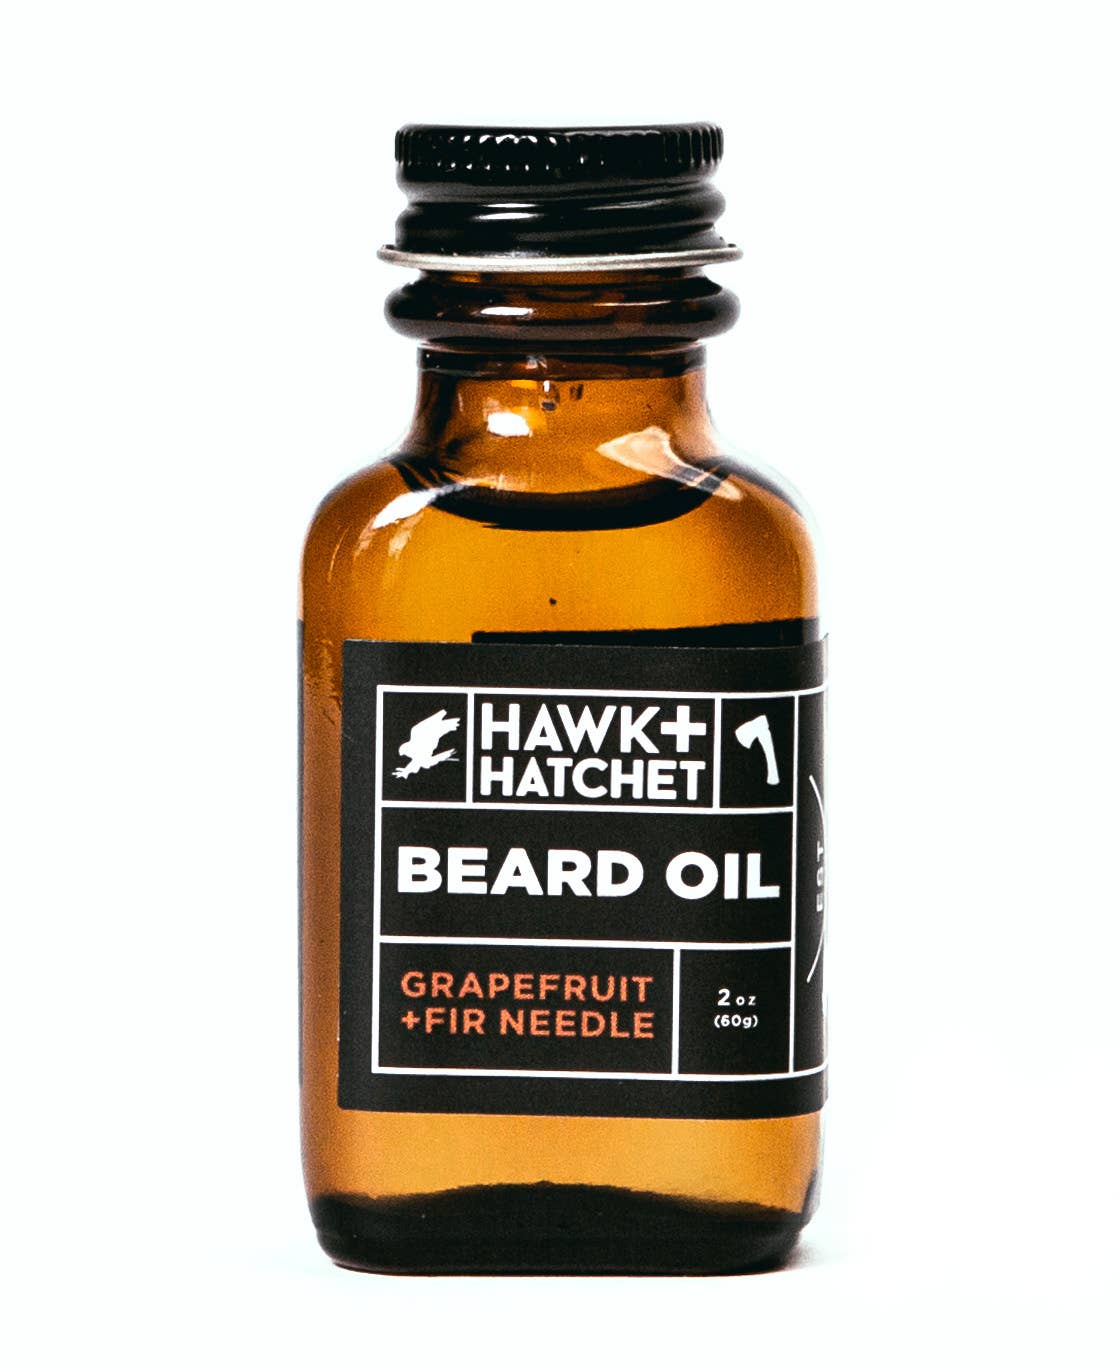 "Hawk & Hatchet" Beard Oil